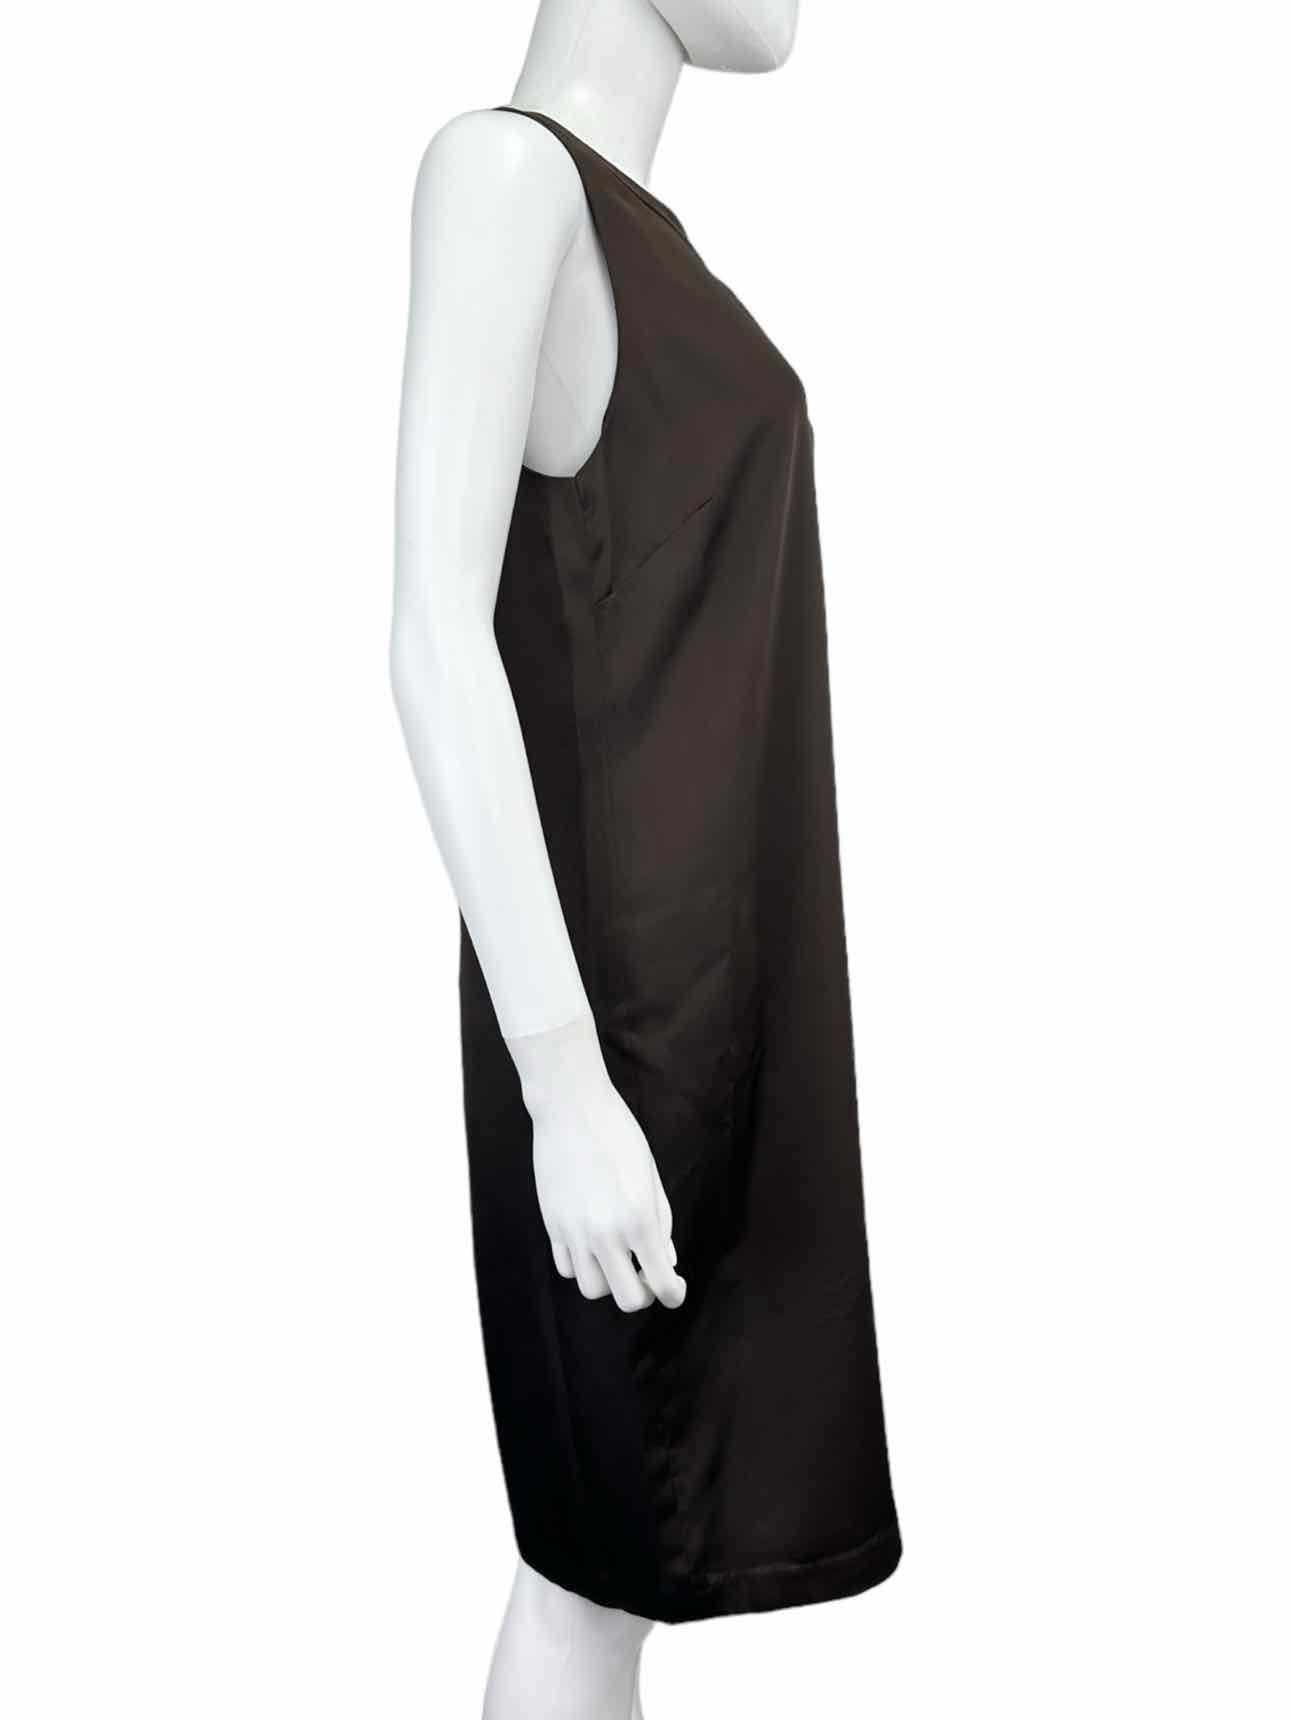 LAUREN Ralph Lauren NWT Brown Satin Sleeveless Dress Size 8